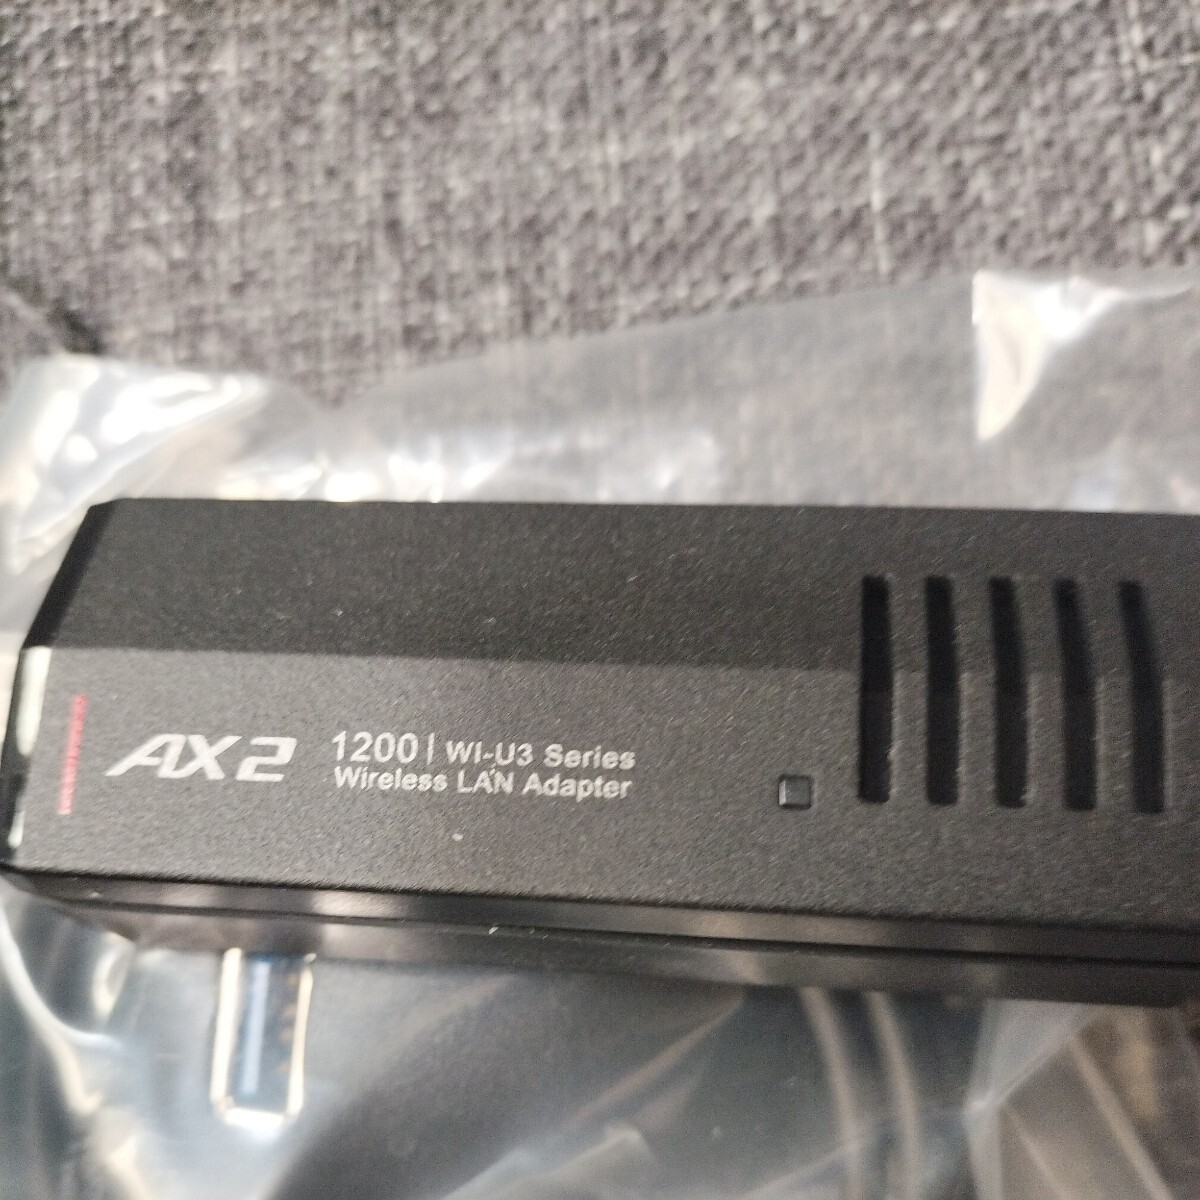  Buffalo 11ax/ac/n/a/g/b беспроводной LAN беспроводная телефонная трубка USB3.2 (Gen1) соответствует встроенный антенна модель Driver встроенный WI-U3-1200AX2I/N 2 раз использование .